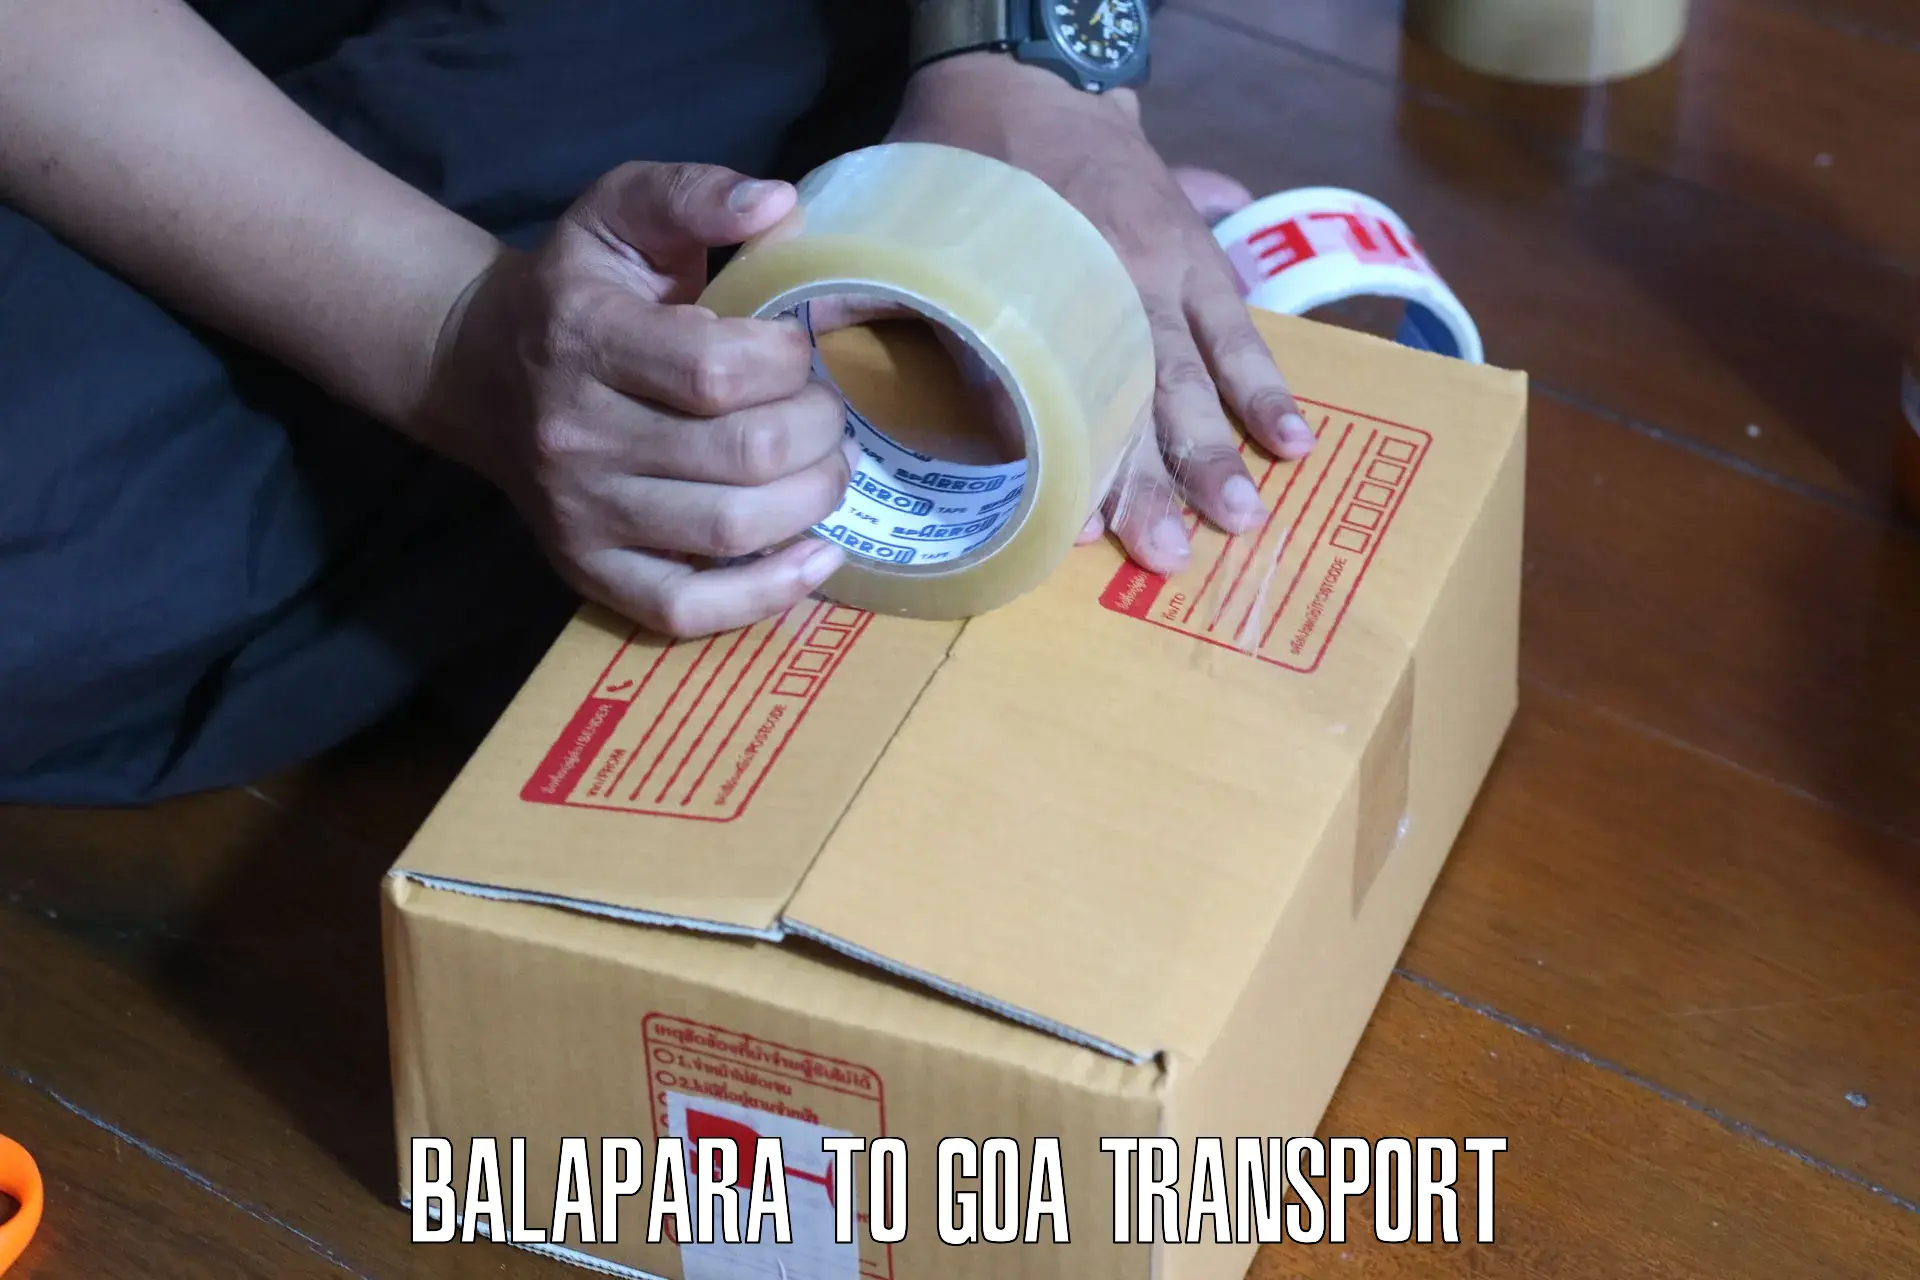 Nearby transport service Balapara to Panaji